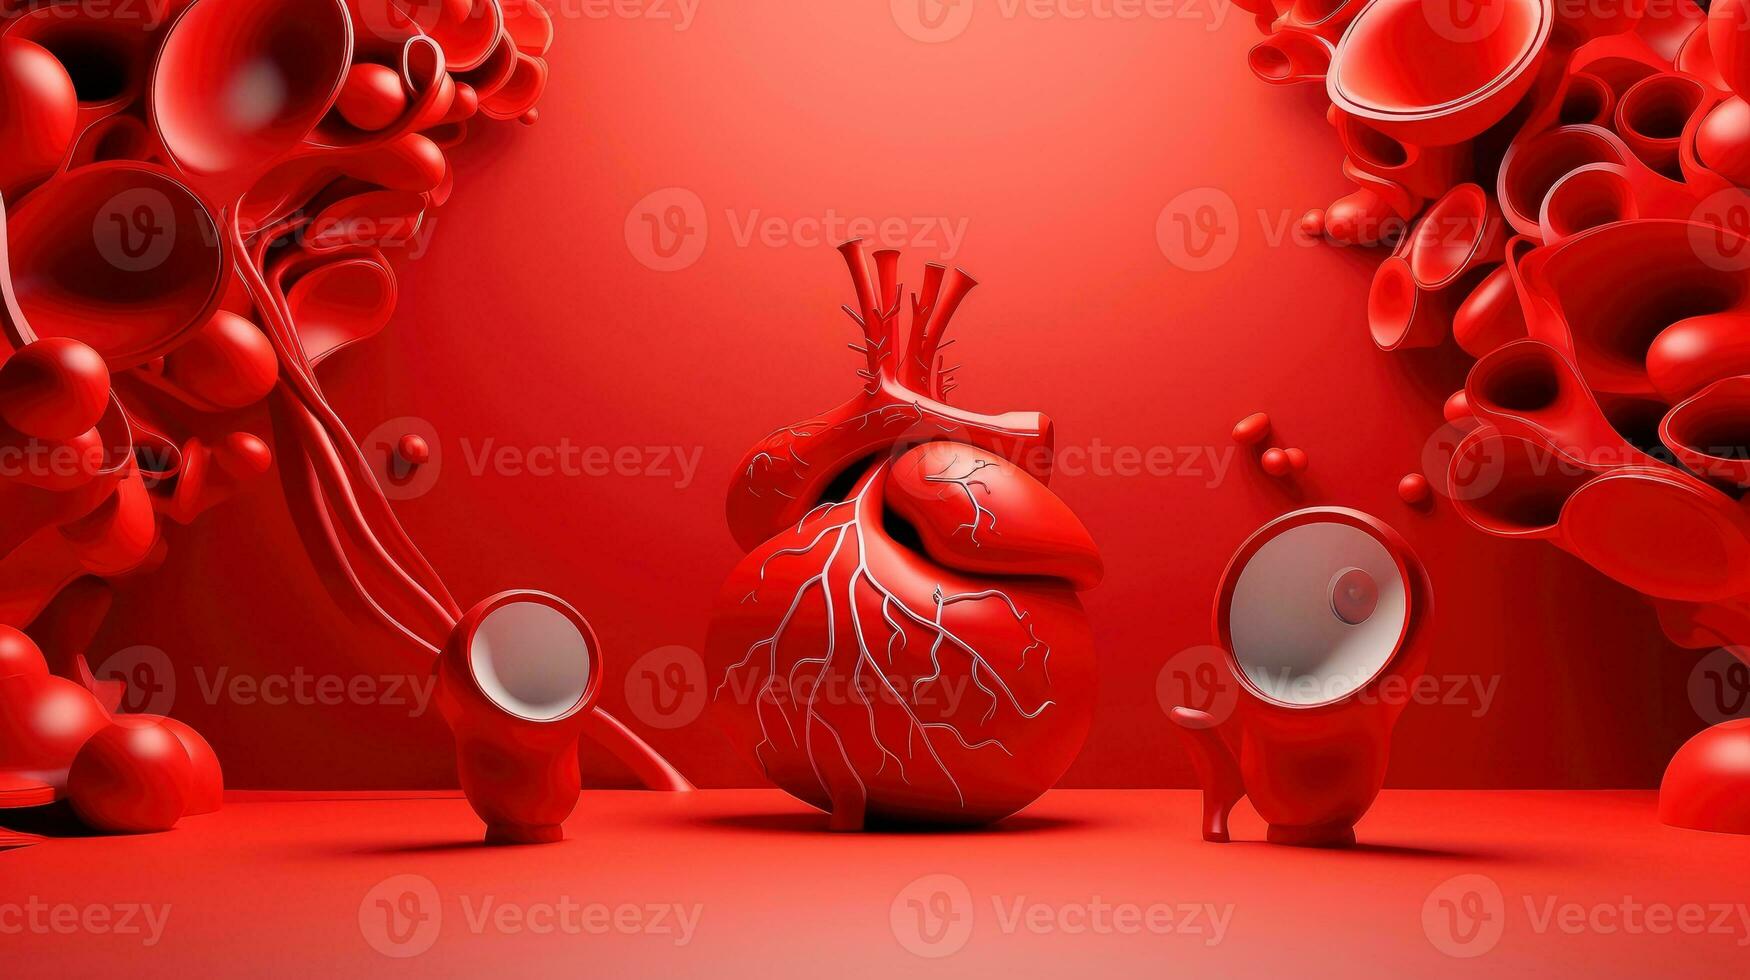 3d illustratie van de menselijk orgaan systemen, menselijk intern organen. anatomie. zenuwachtig, bloedsomloop, spijsvertering, uitscheidingsmechanisme, urinair, en bot systemen. medisch onderwijs concept, generatief ai illustratie foto